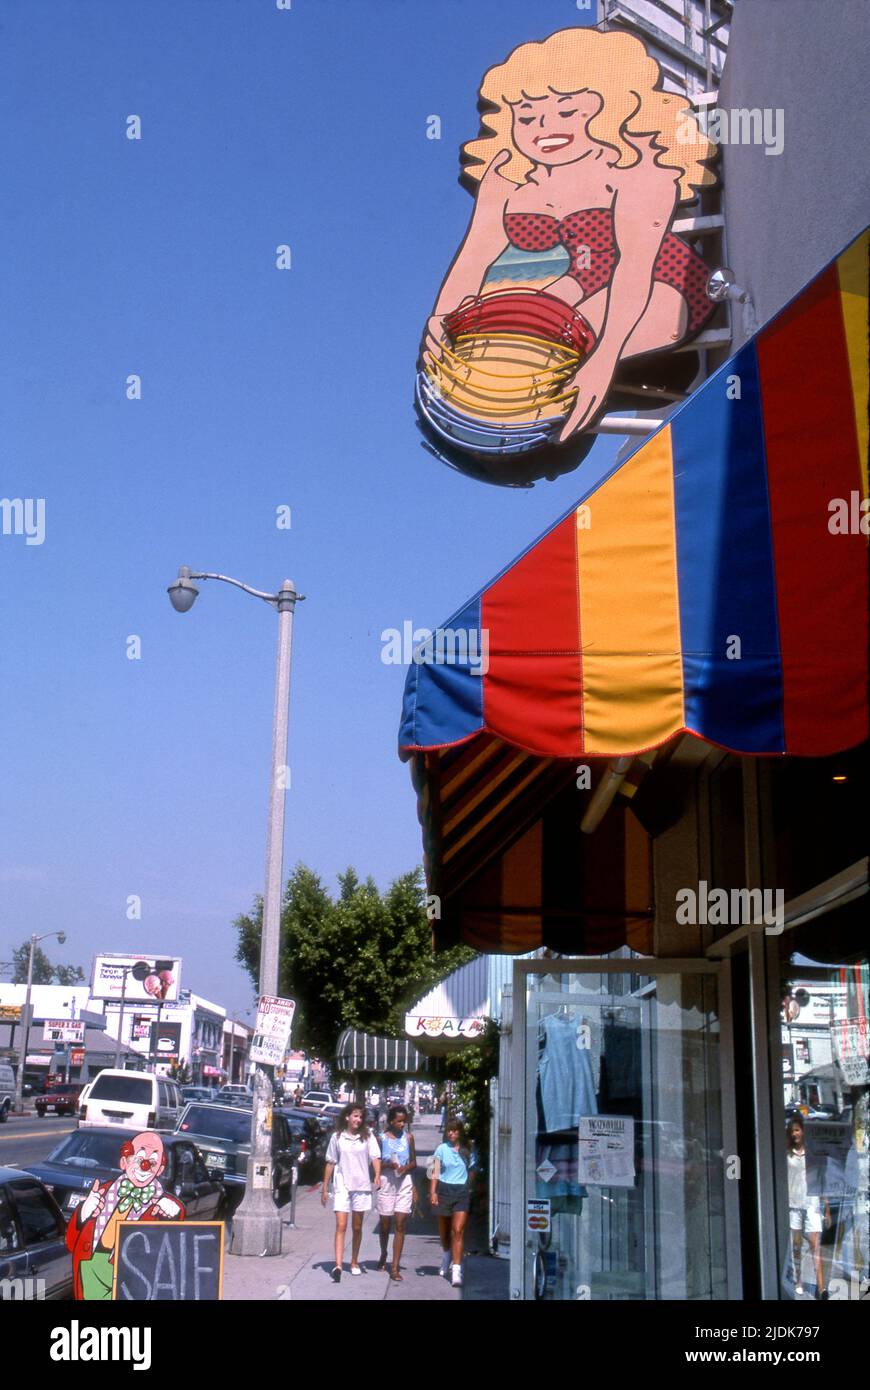 Chicas jóvenes caminando por Melrose Ave. En Los Ángeles, alrededor de 1980s Foto de stock